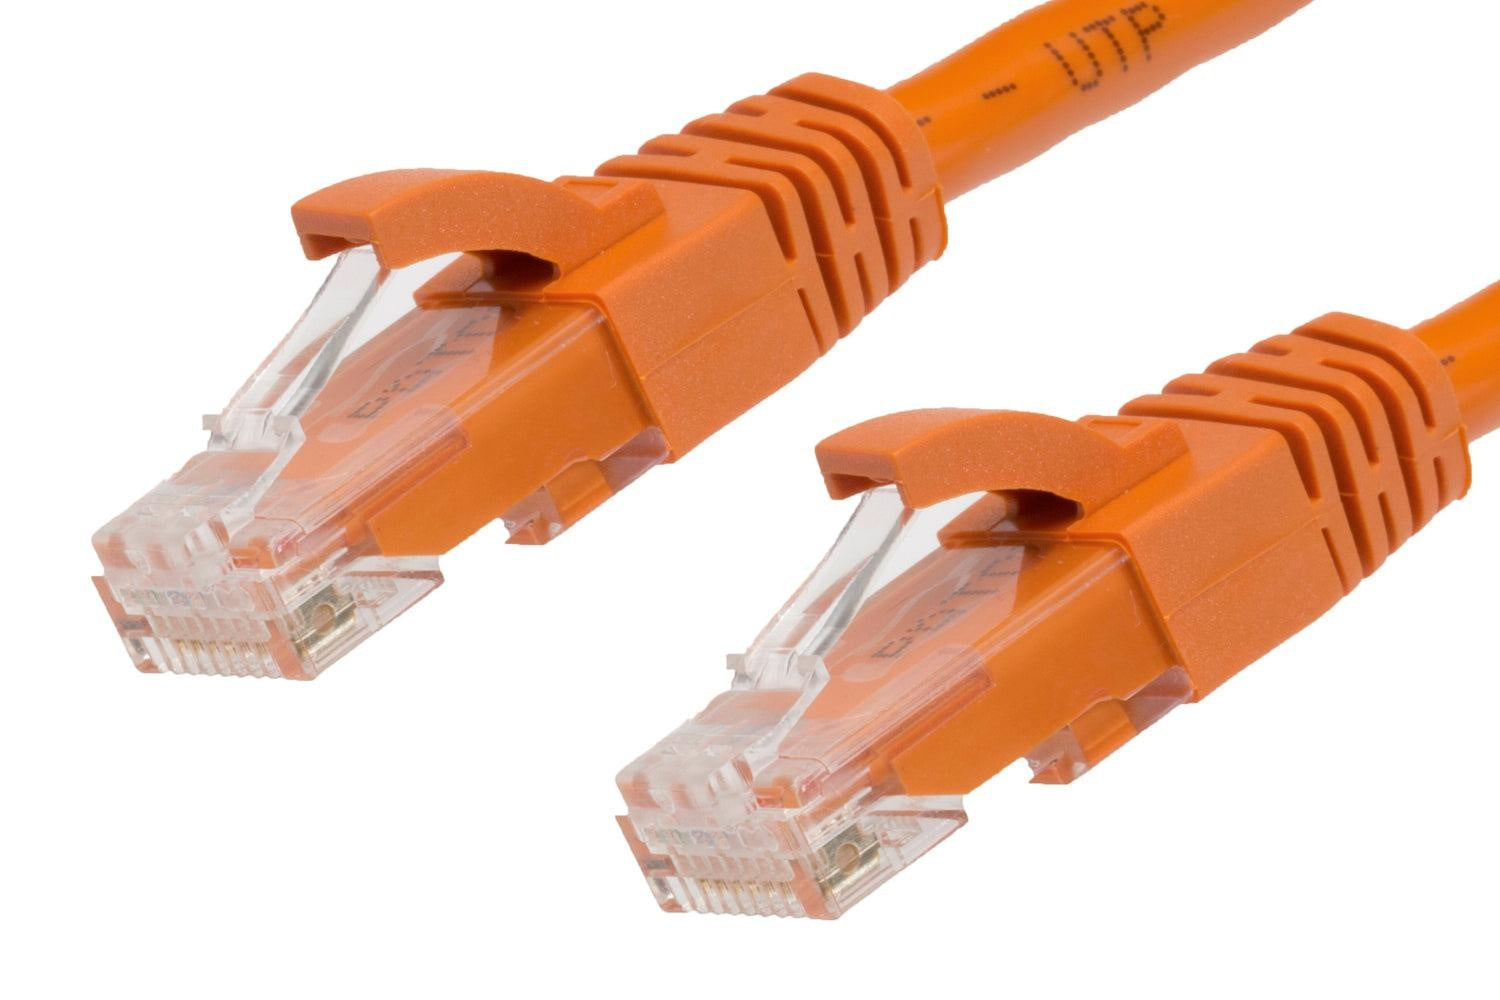 50m RJ45 CAT6 Ethernet Cable. Orange Deals499